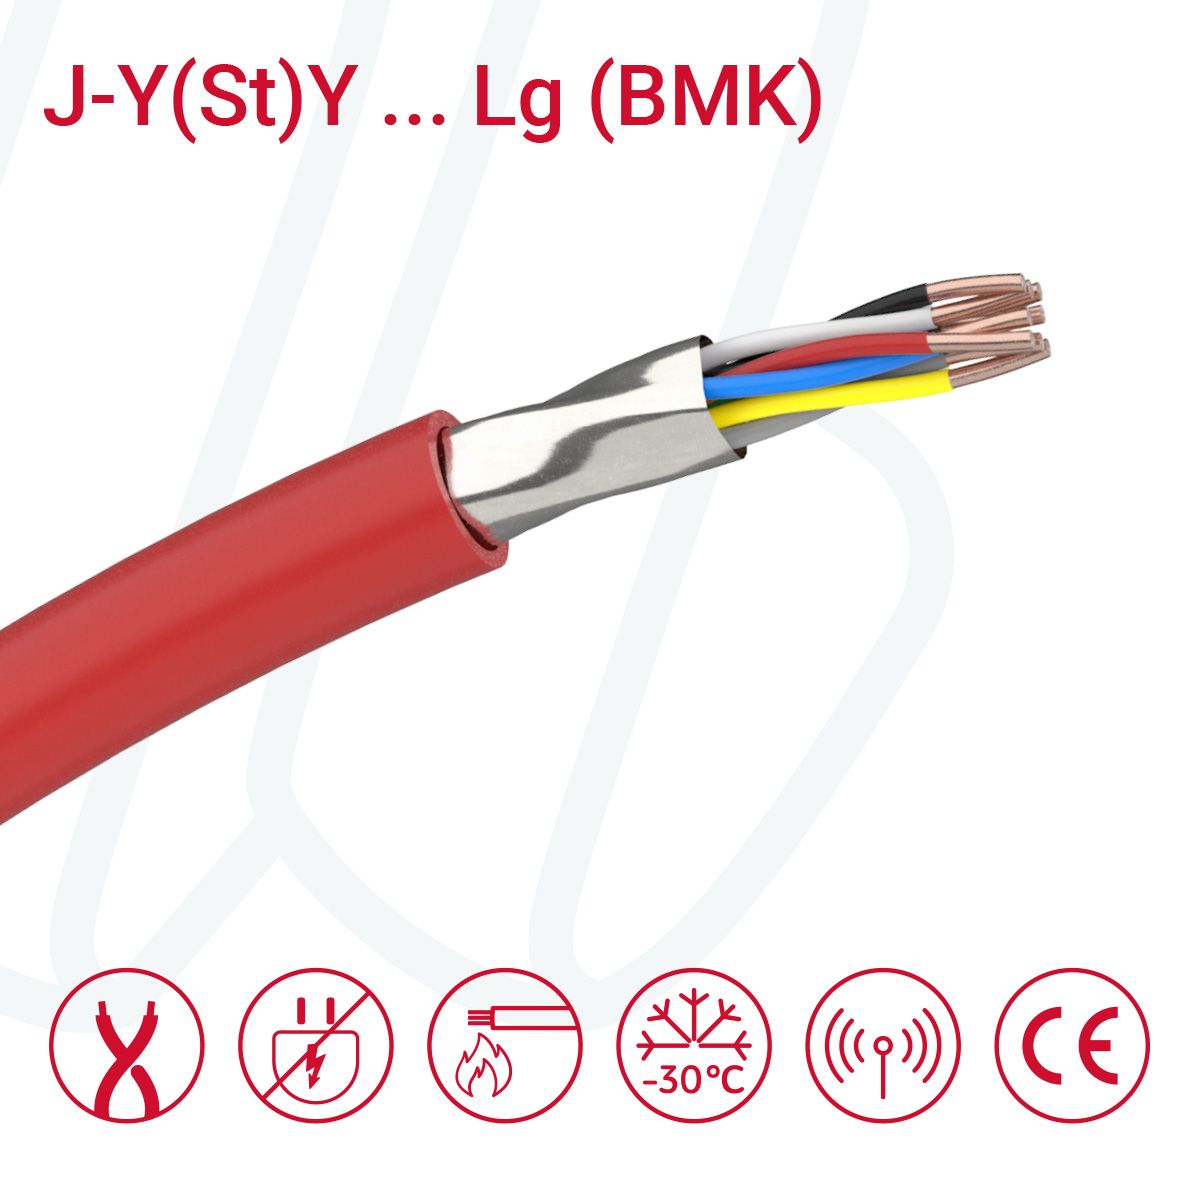 Кабель для пожежної сигналізації J-Y(St)Y ... Lg (BMK) 02X2X0.8 (0.52мм²) червоний, 04, 0.52